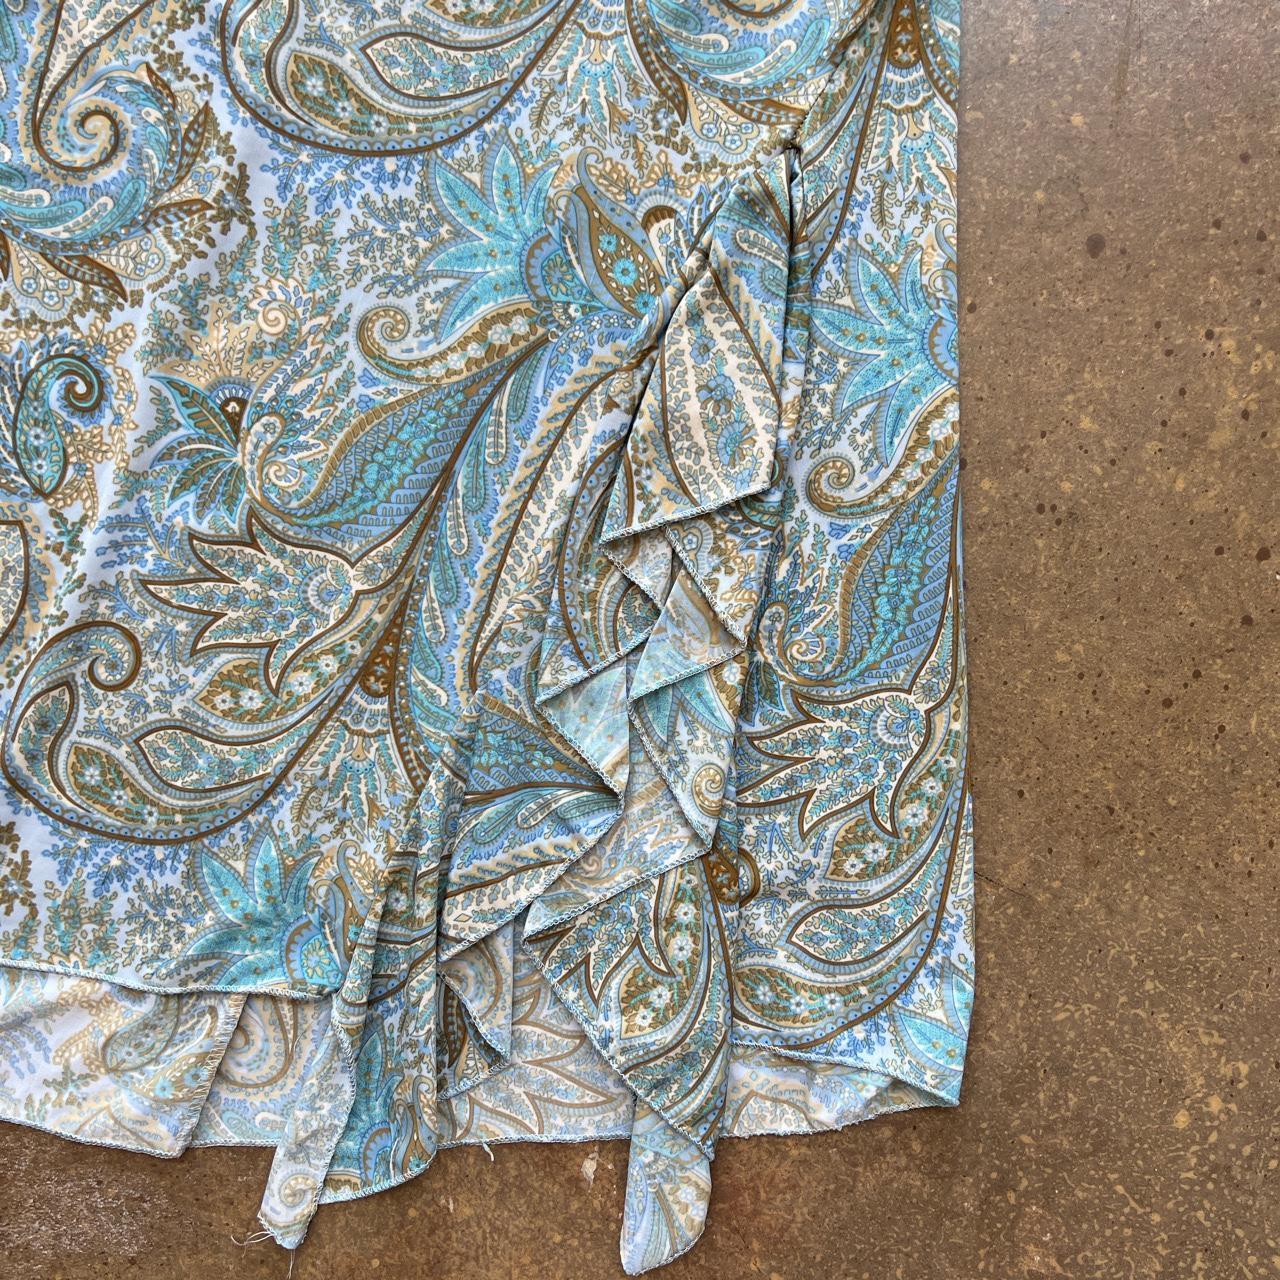 Goddess Women's Blue and Tan Dress (4)